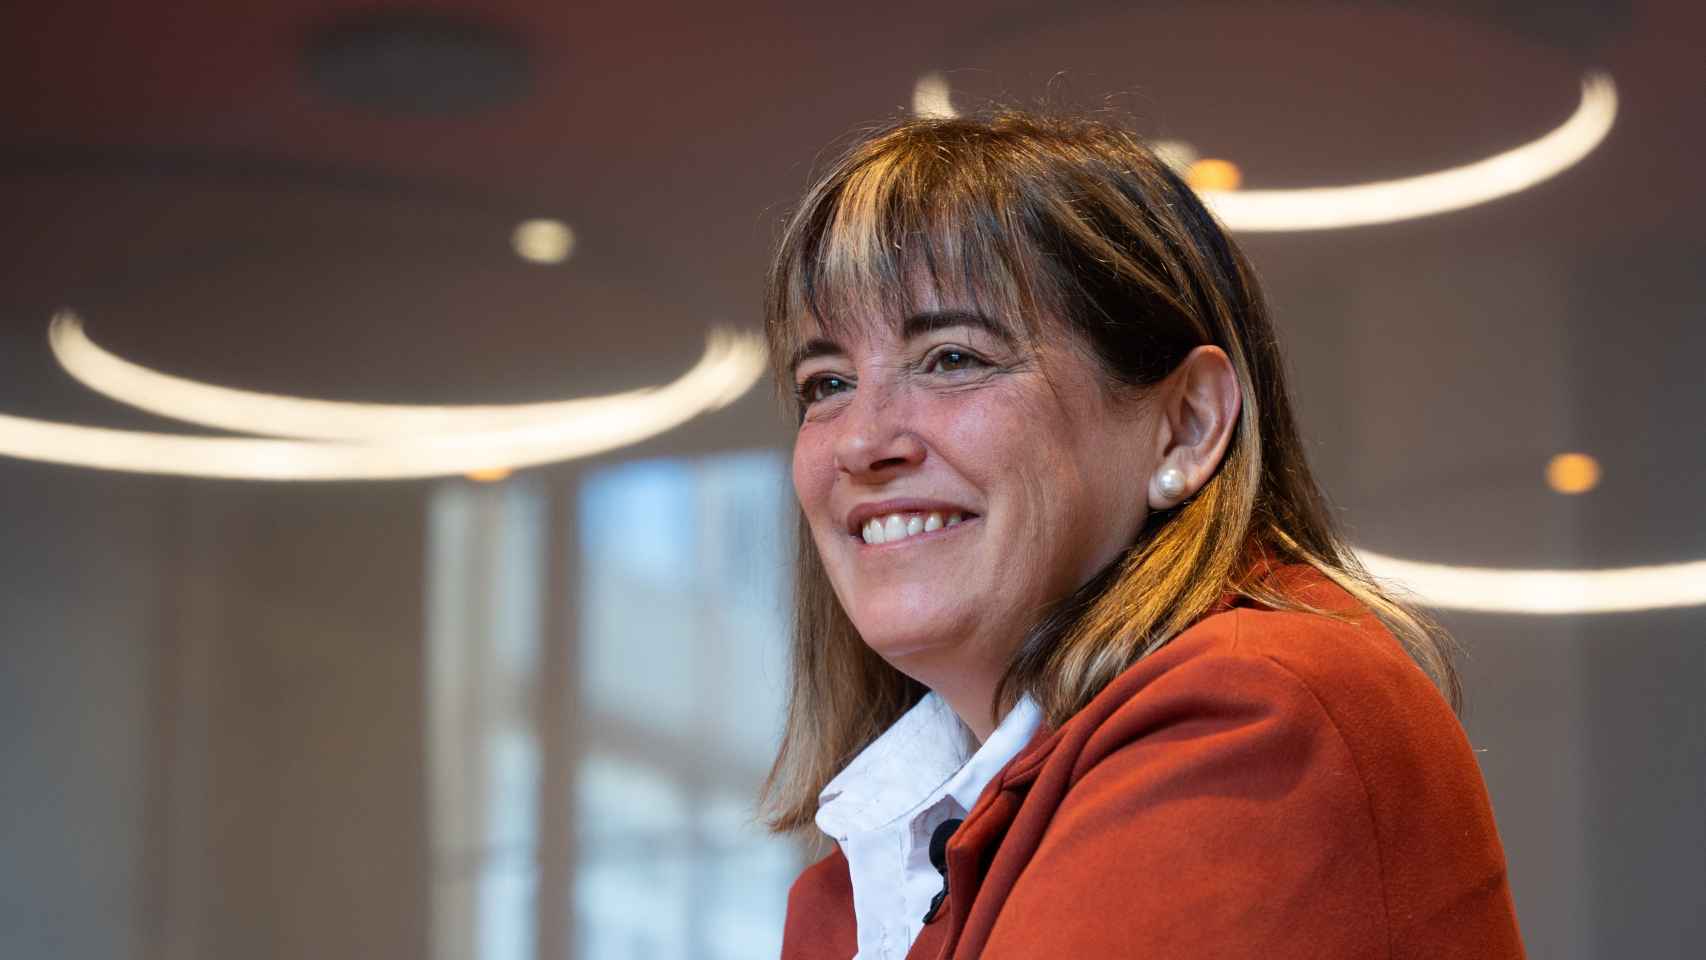 Gemma Badia, alcaldesa de Gavà